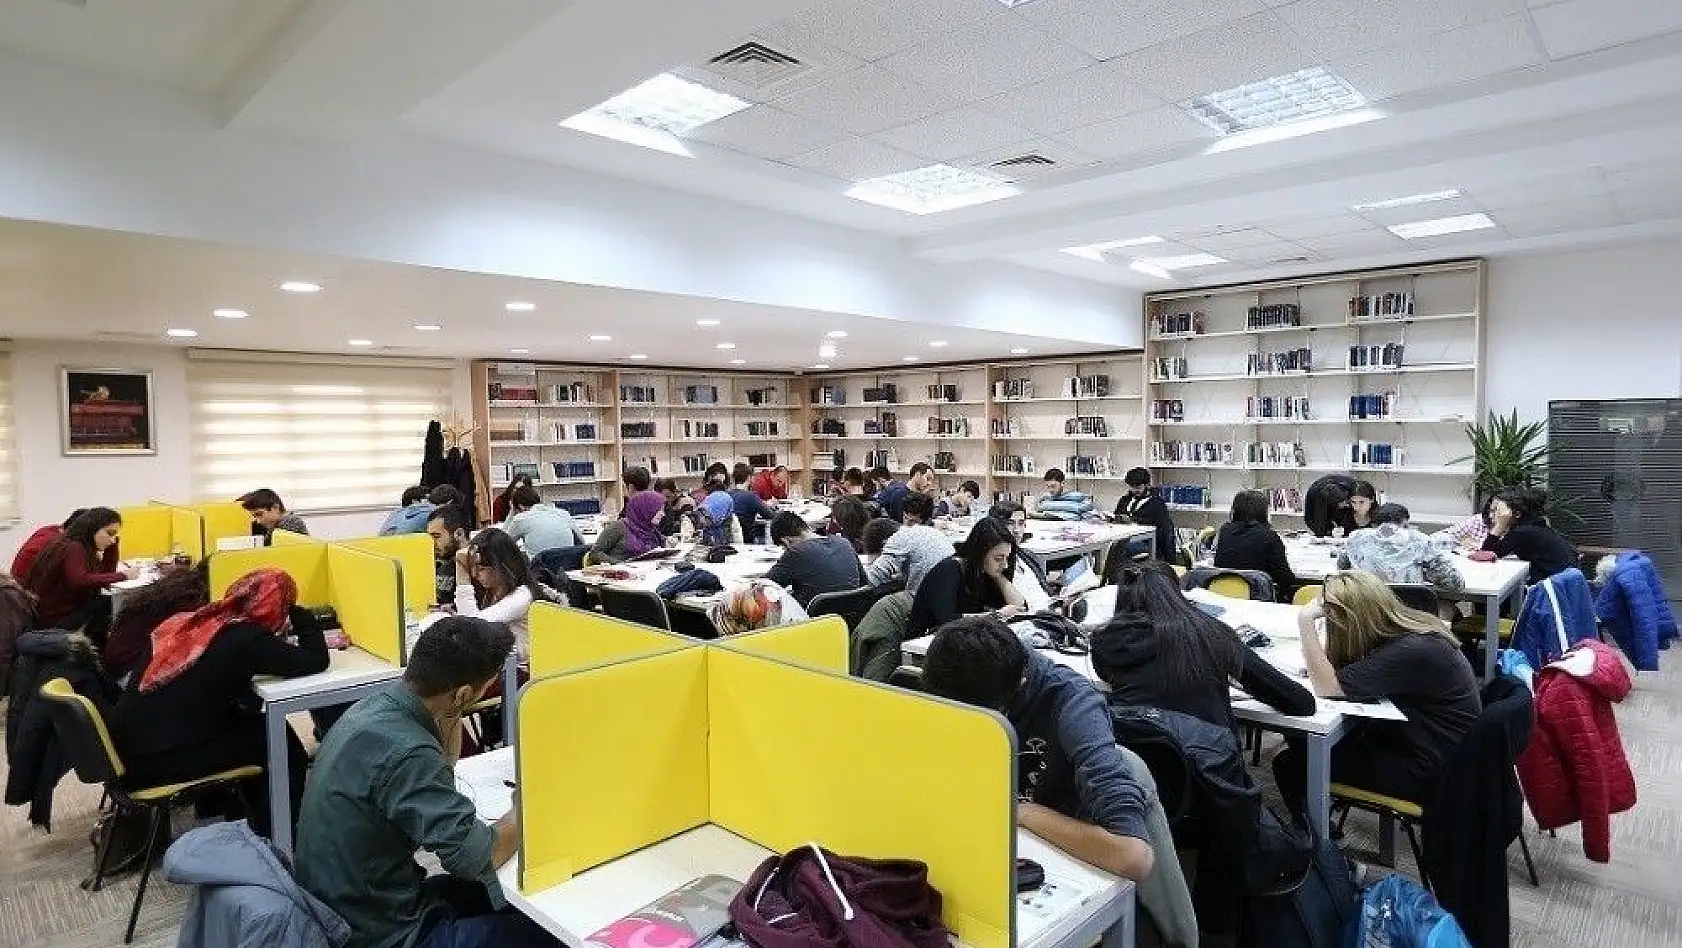 Büyükşehir'in kütüphane hizmeti takdir topluyor